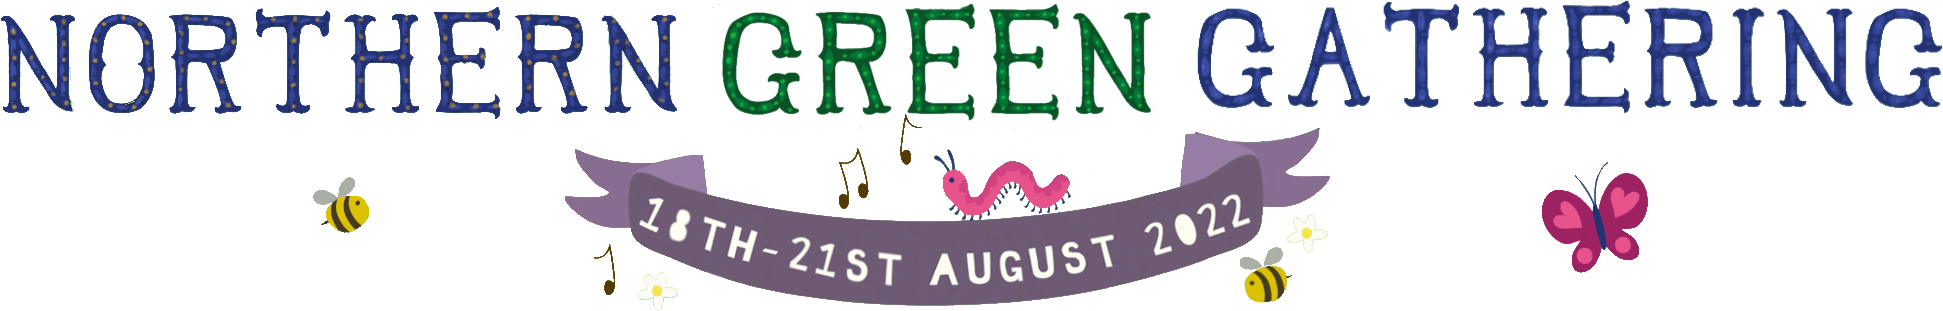 Northern Green Gathering logo